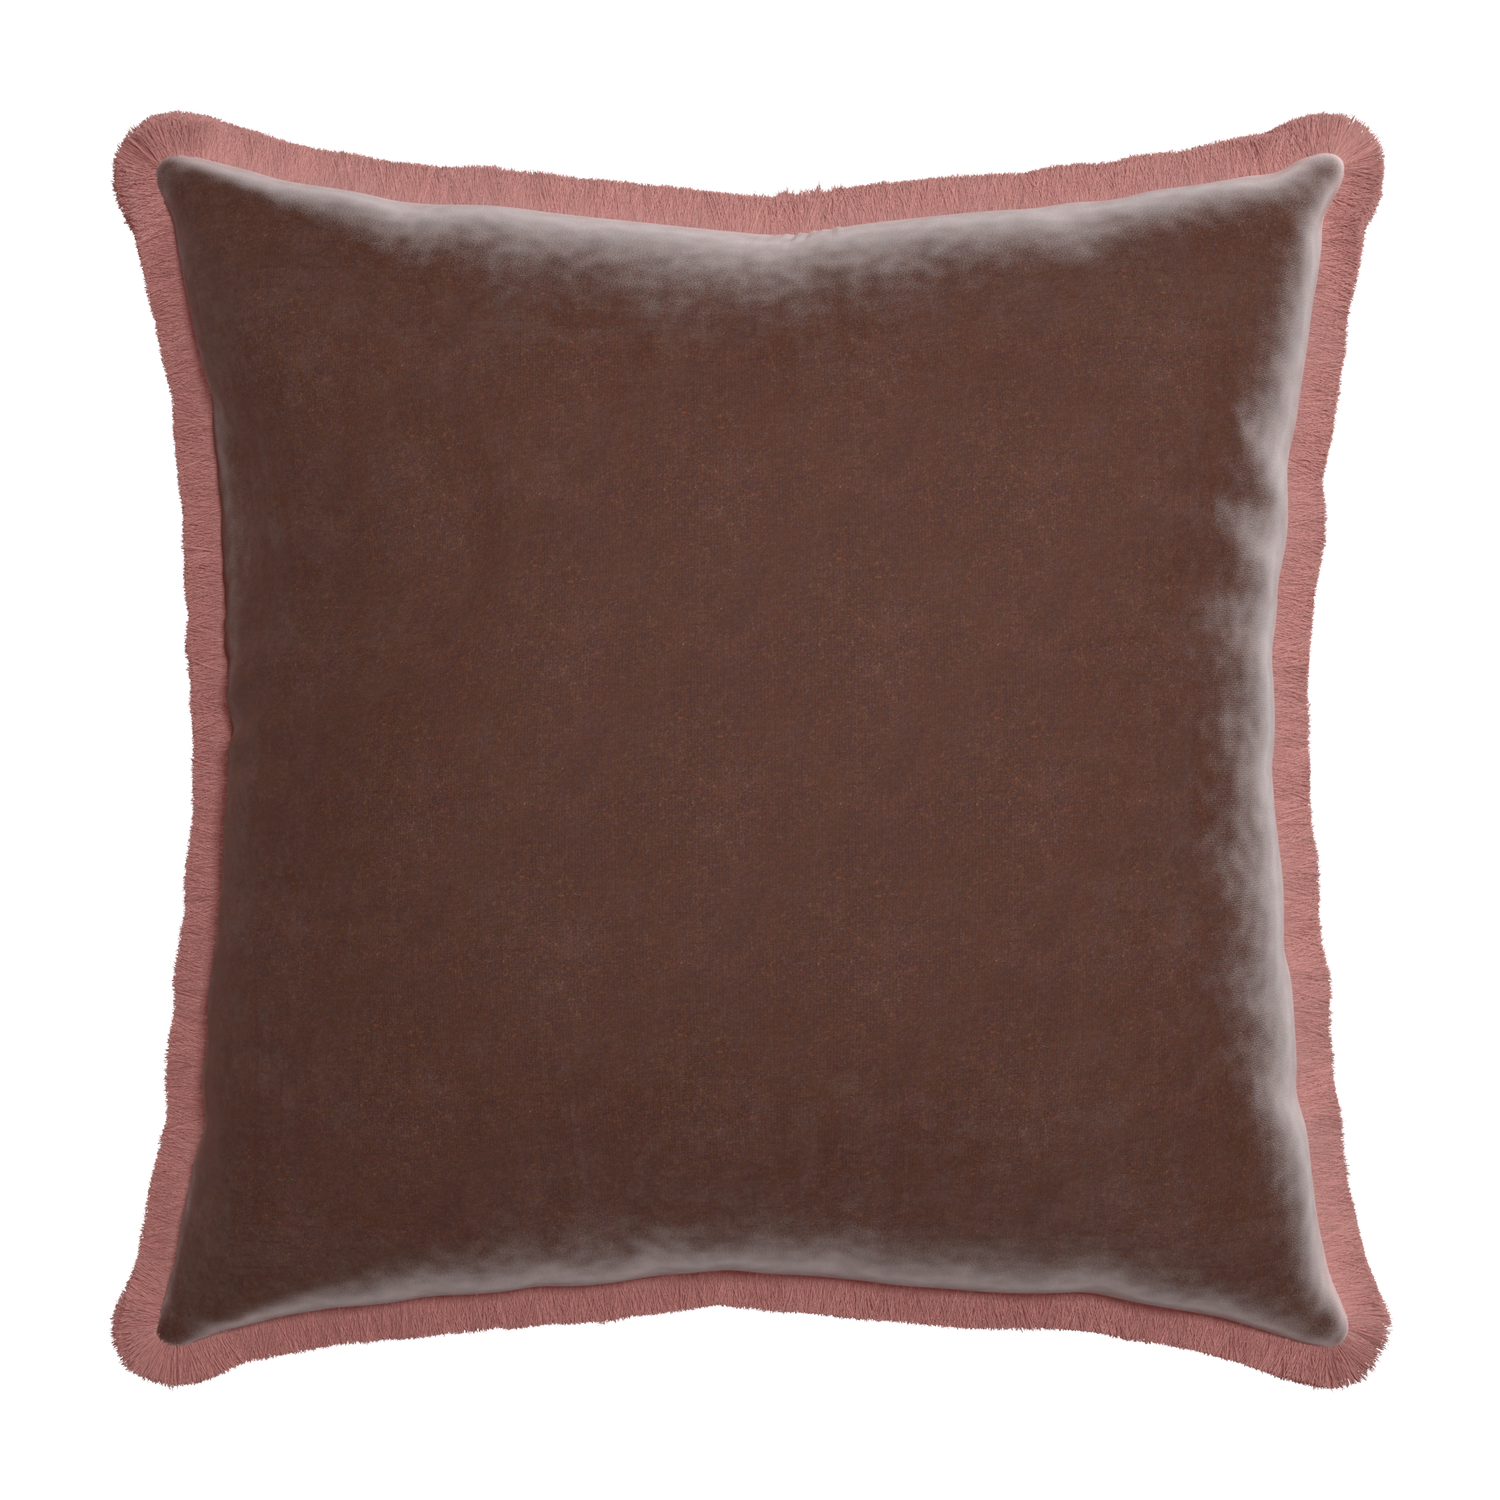 square brown velvet pillow with dusty rose fringe